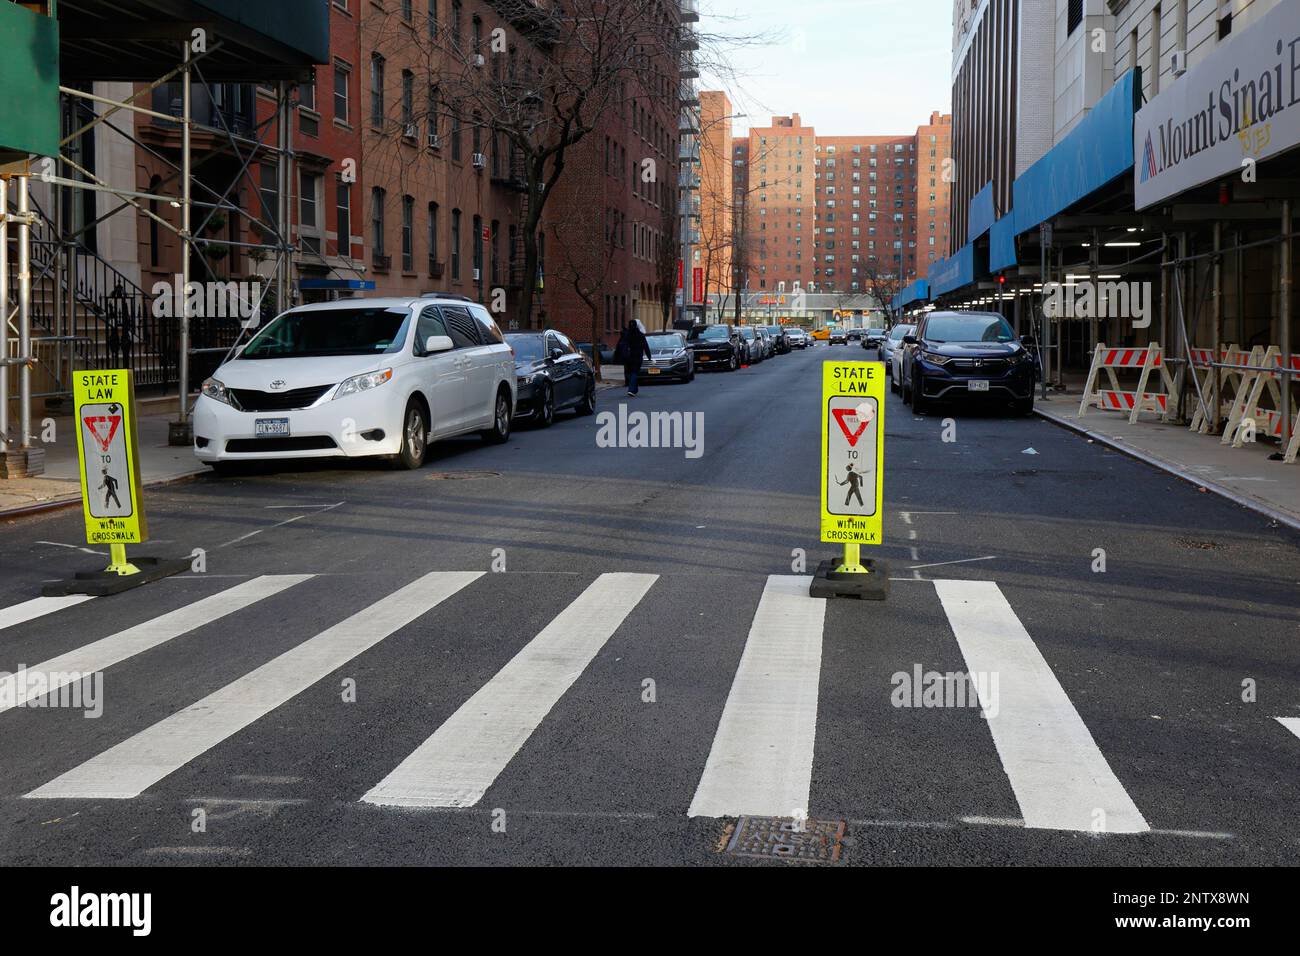 Rara señalización de 'Ley del Estado cede a los peatones dentro del cruce de peatones' en un cruce de peatones marcado, pero sin señales de stop, en Manhattan, Nueva York Foto de stock